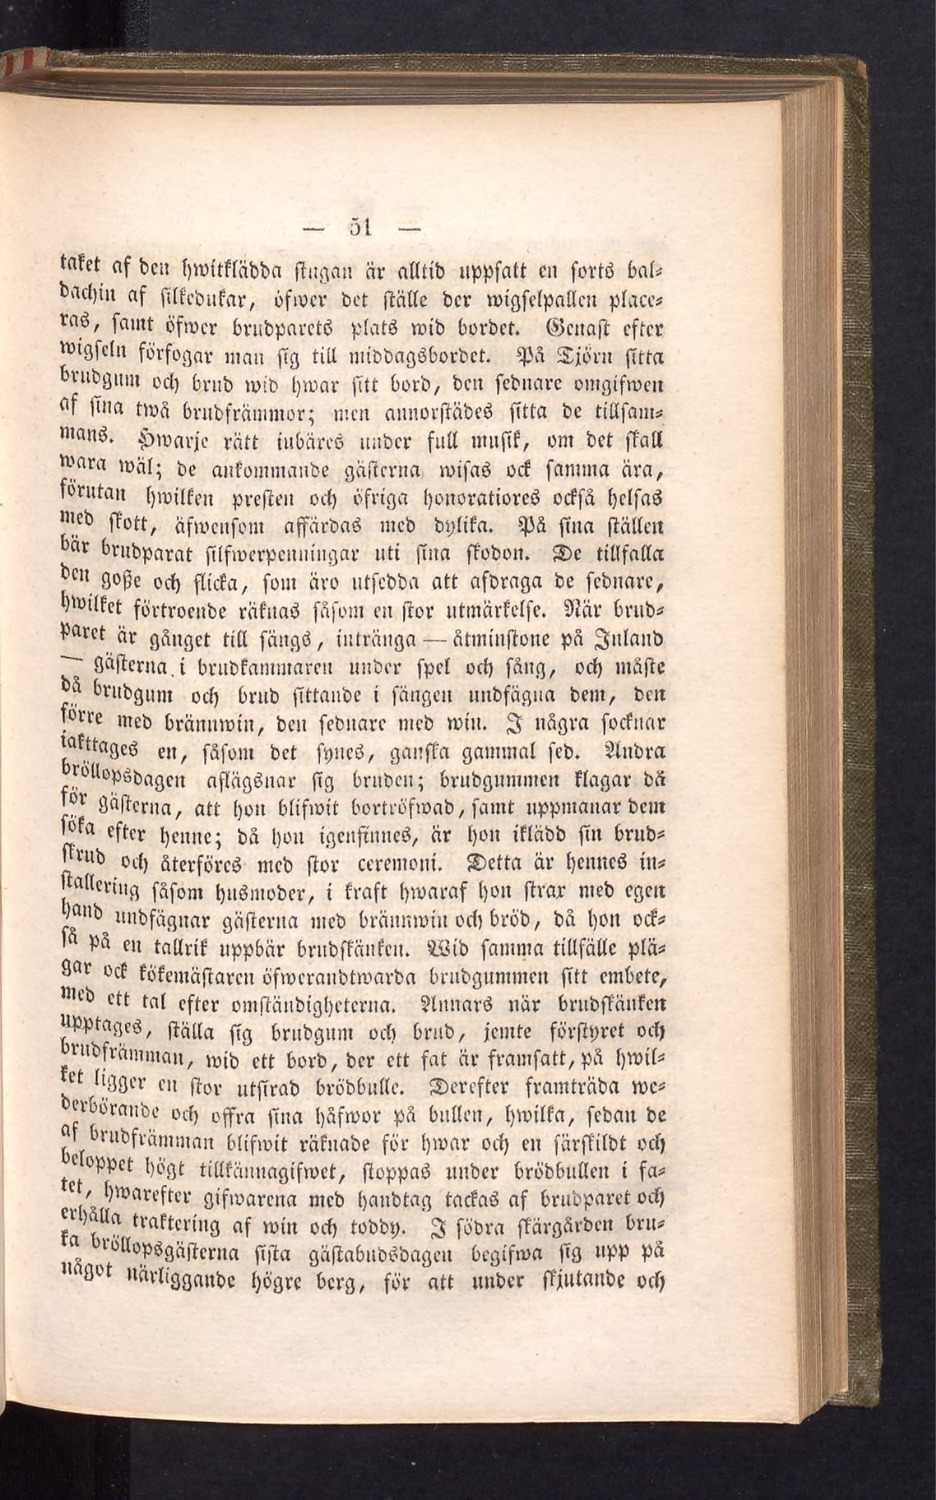 Gulnad boksida med äldre tryckt text. Fortsättning av texten om bröllop i Bohuslän.